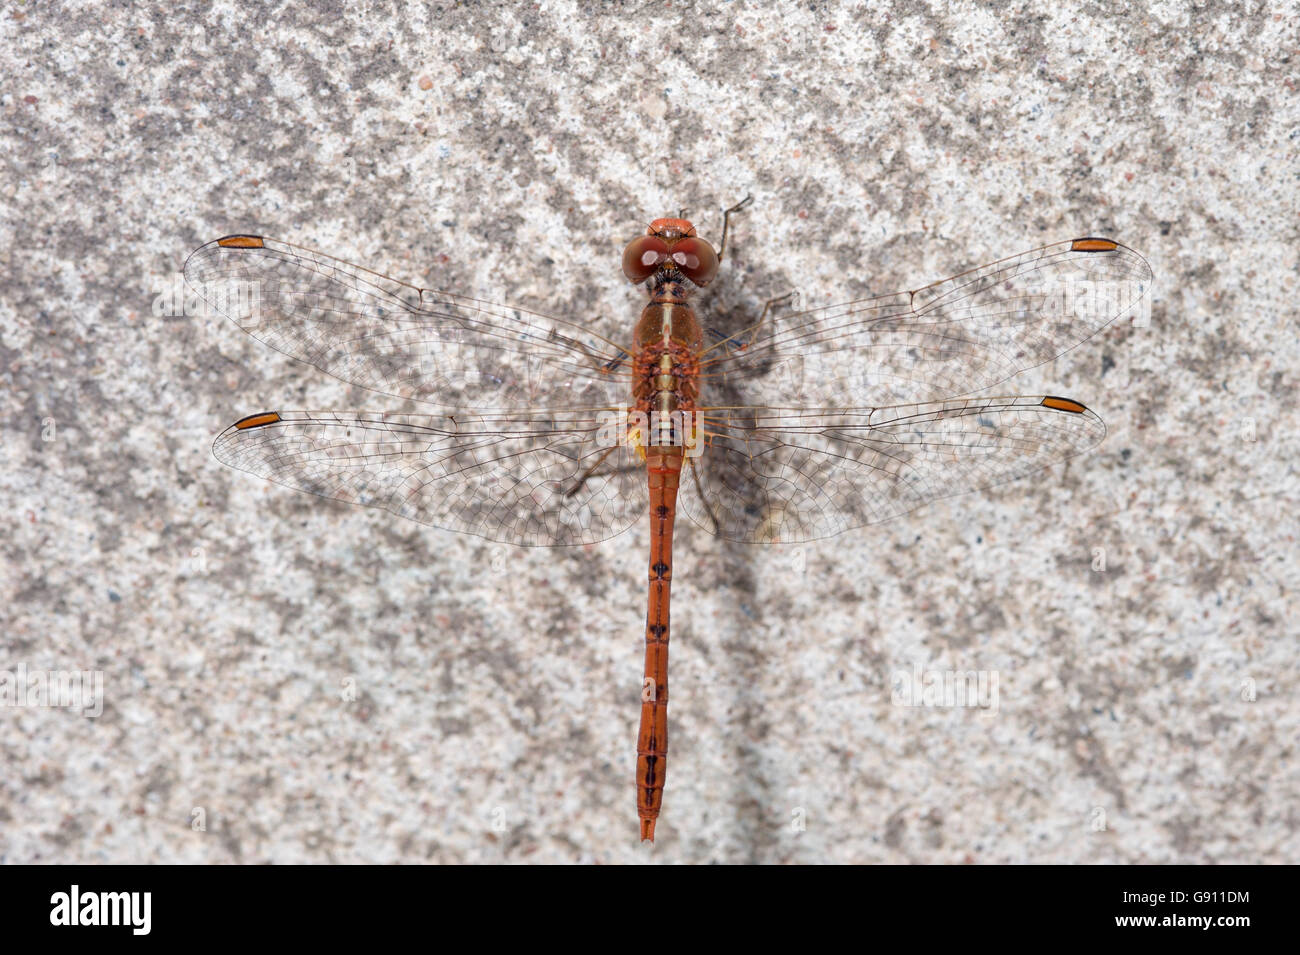 L'Est de l'hawk dragonfly (Austrocordulia refracta) reposant sur le béton Banque D'Images